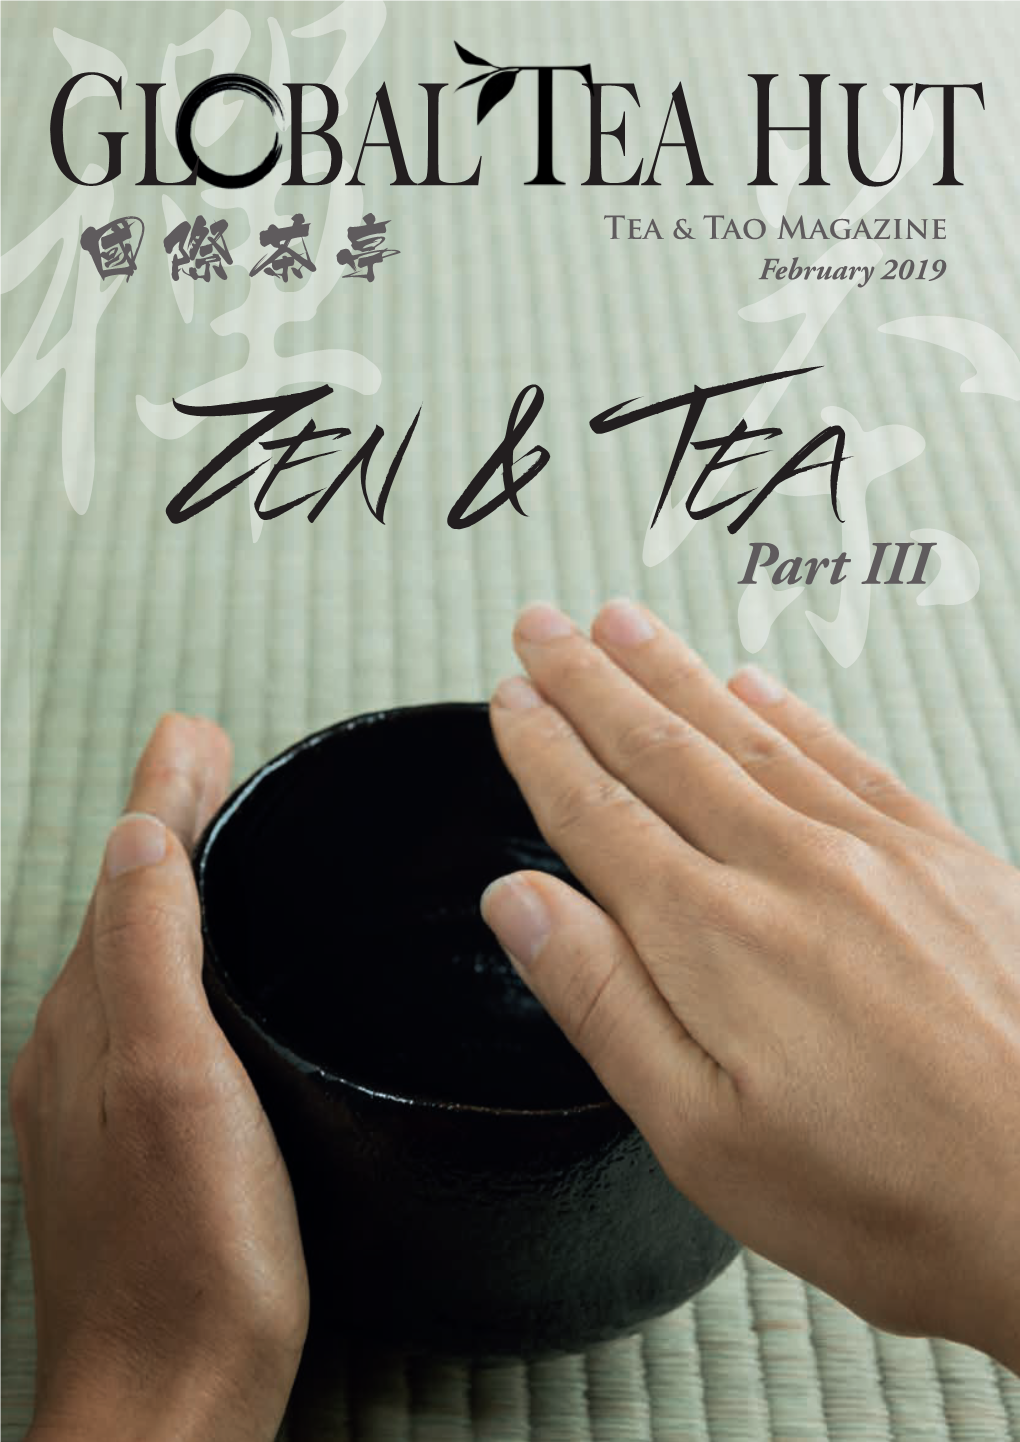 禪國際茶亭 February 2019 Zen & 茶teapart III GLOBAL EA HUT Contentsissue 85 / February 2019 Tea & Tao Magazine Temple寺廟山門 Gate